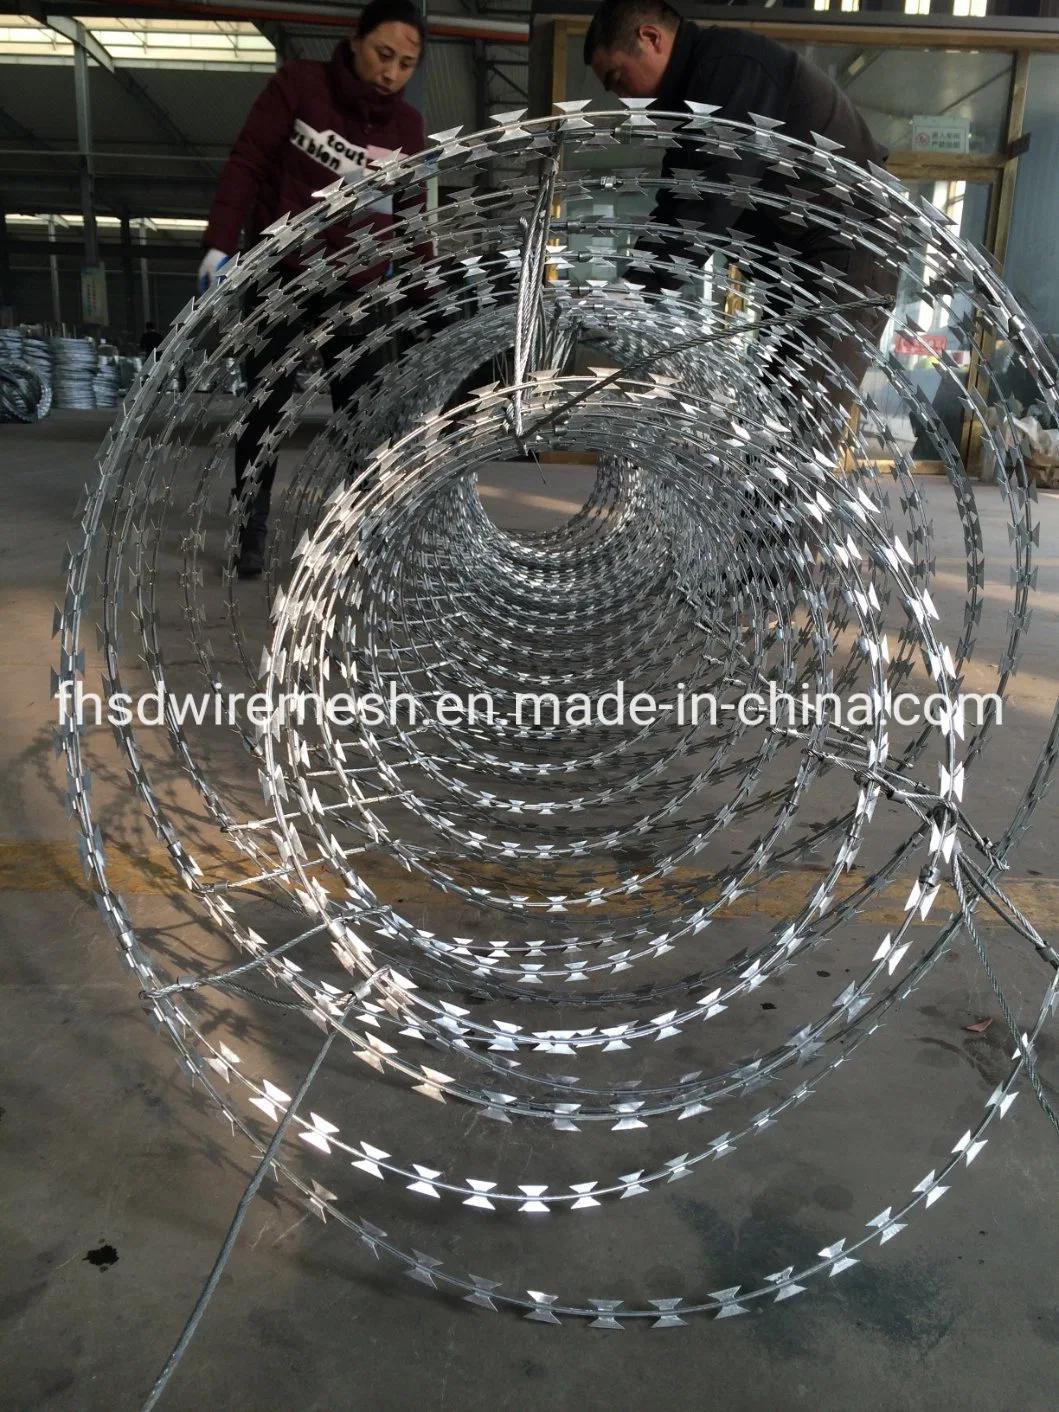 Arame galvanizado Arame farpado a proteção de segurança de aço inoxidável fio navalha